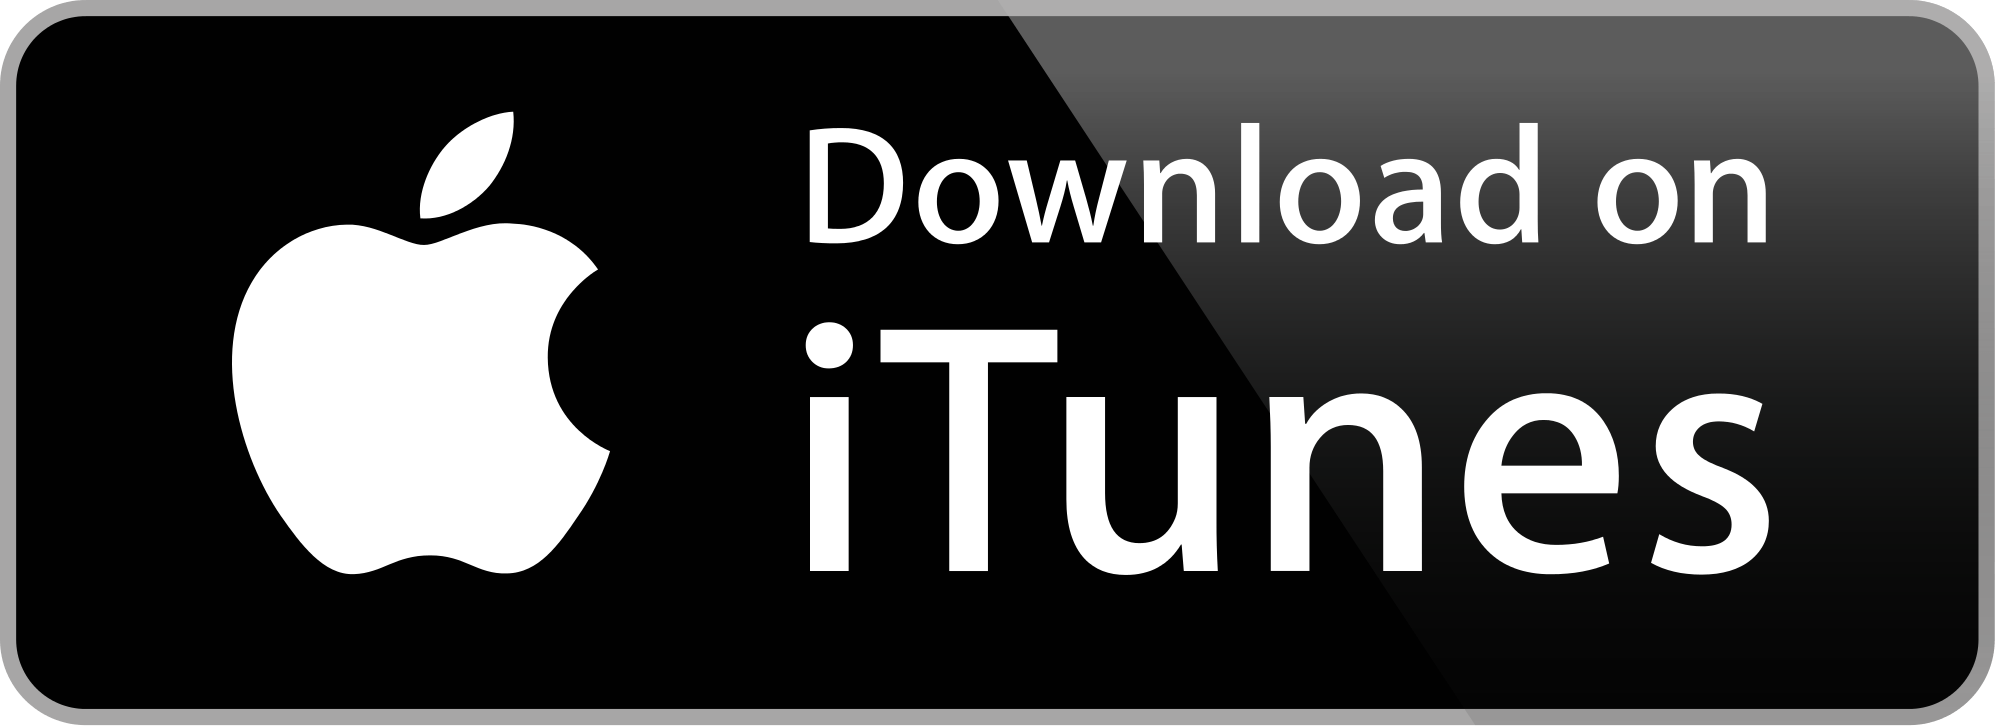 New iTunes Logo - New itunes logo download